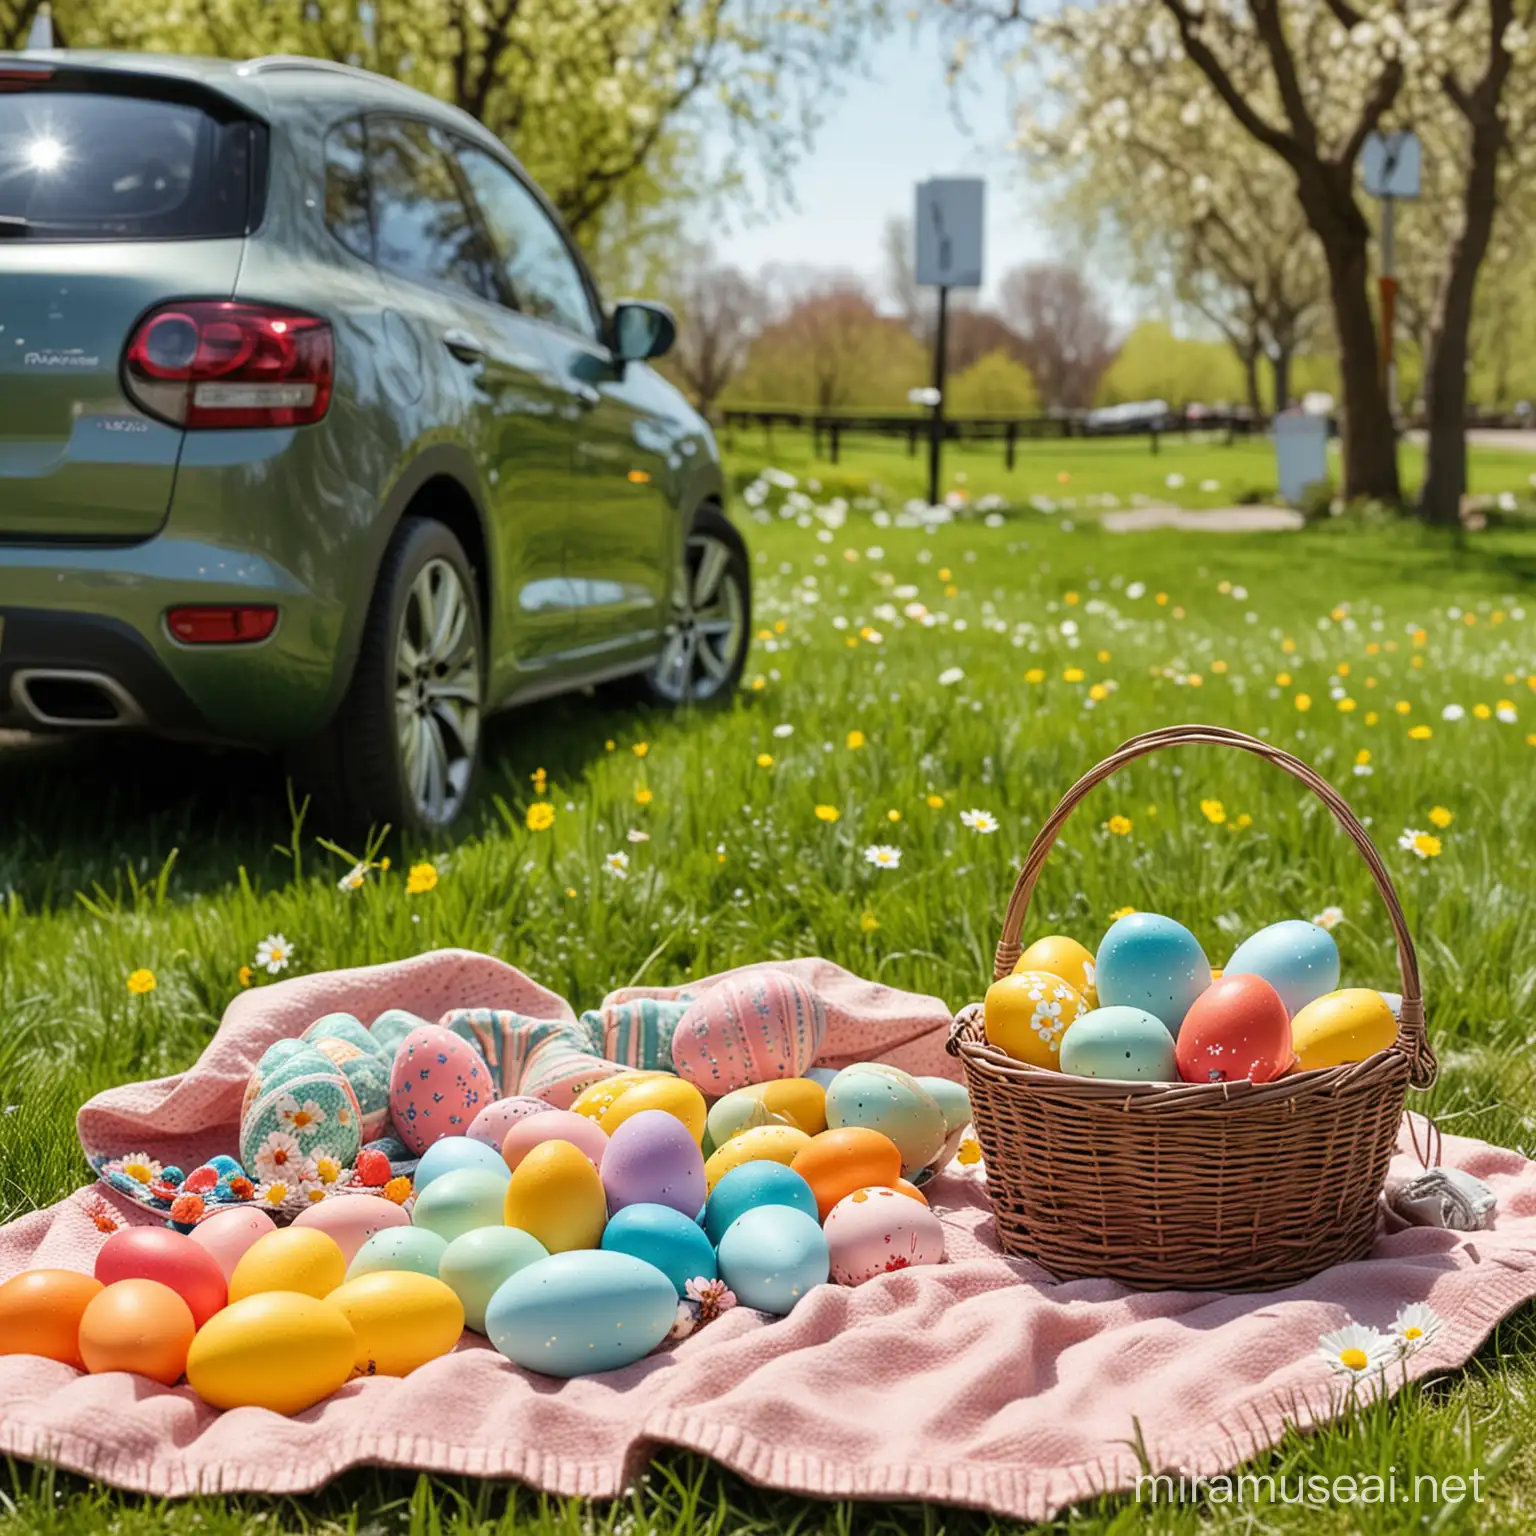 Spring Park Easter Celebration with EV Charging